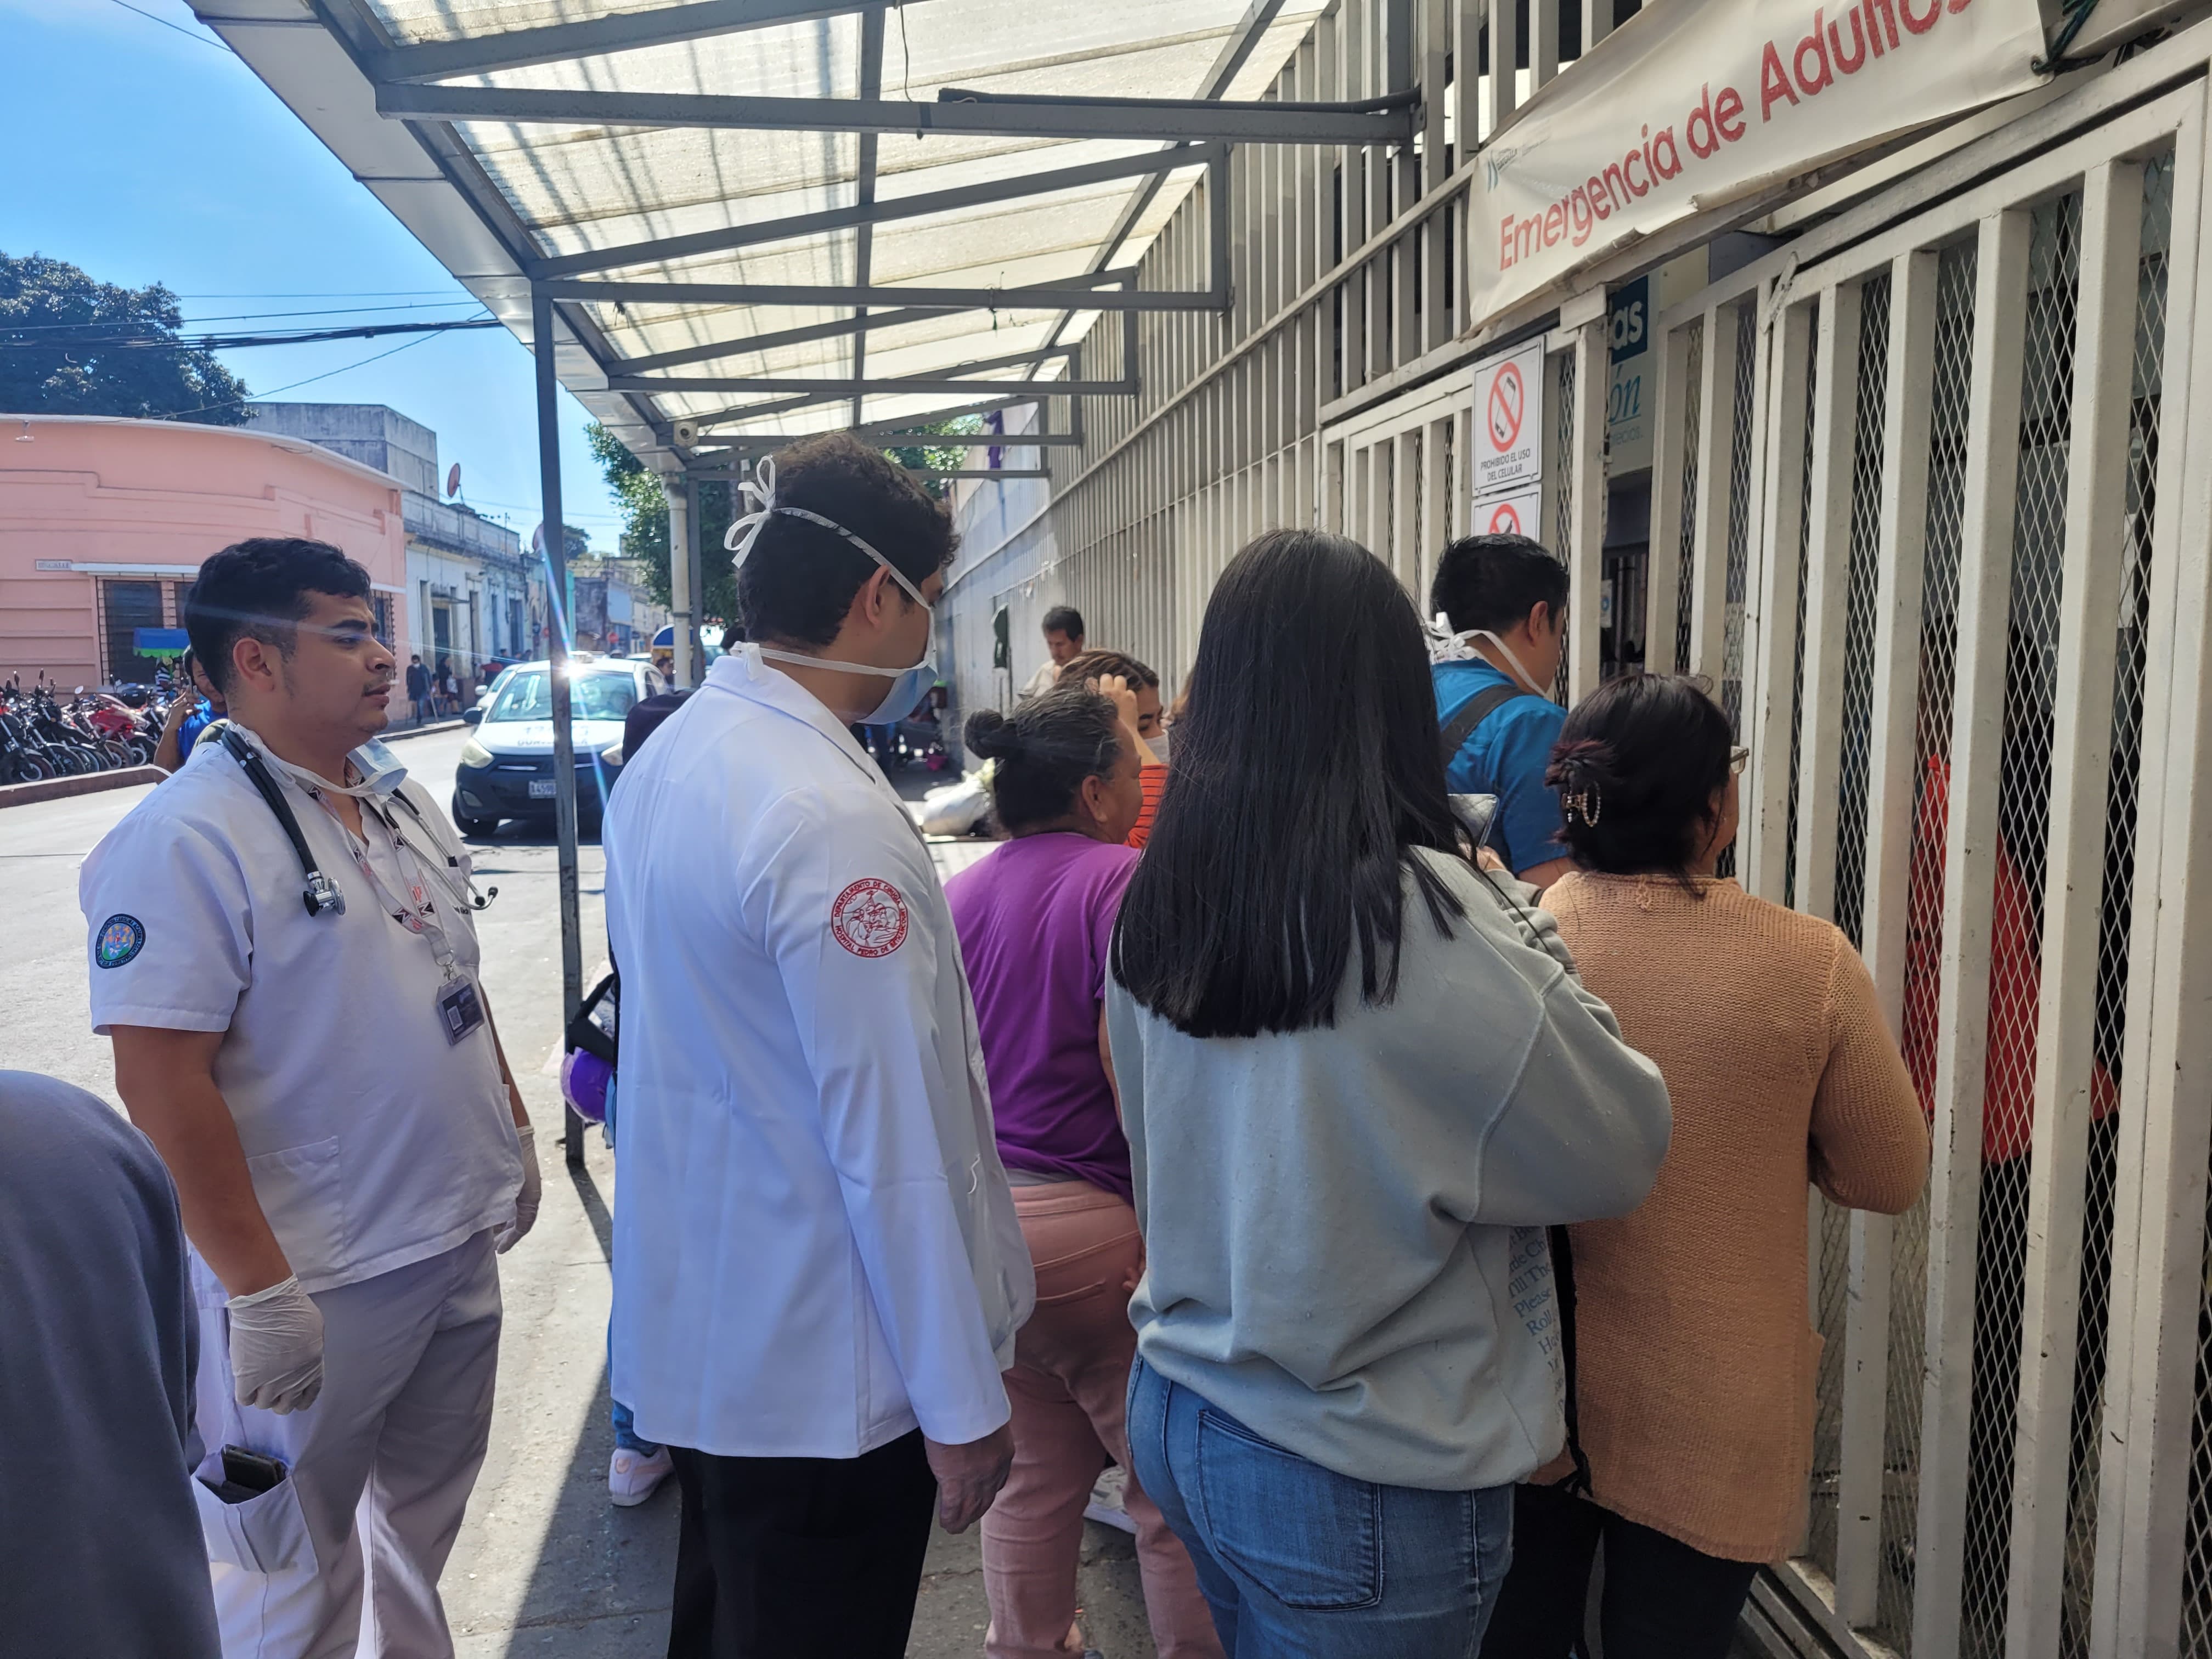 El Hospital General San Juan de Dios se ve afectado en el servicio de energía eléctrica. (Foto Prensa Libre: Gabriel Morales)